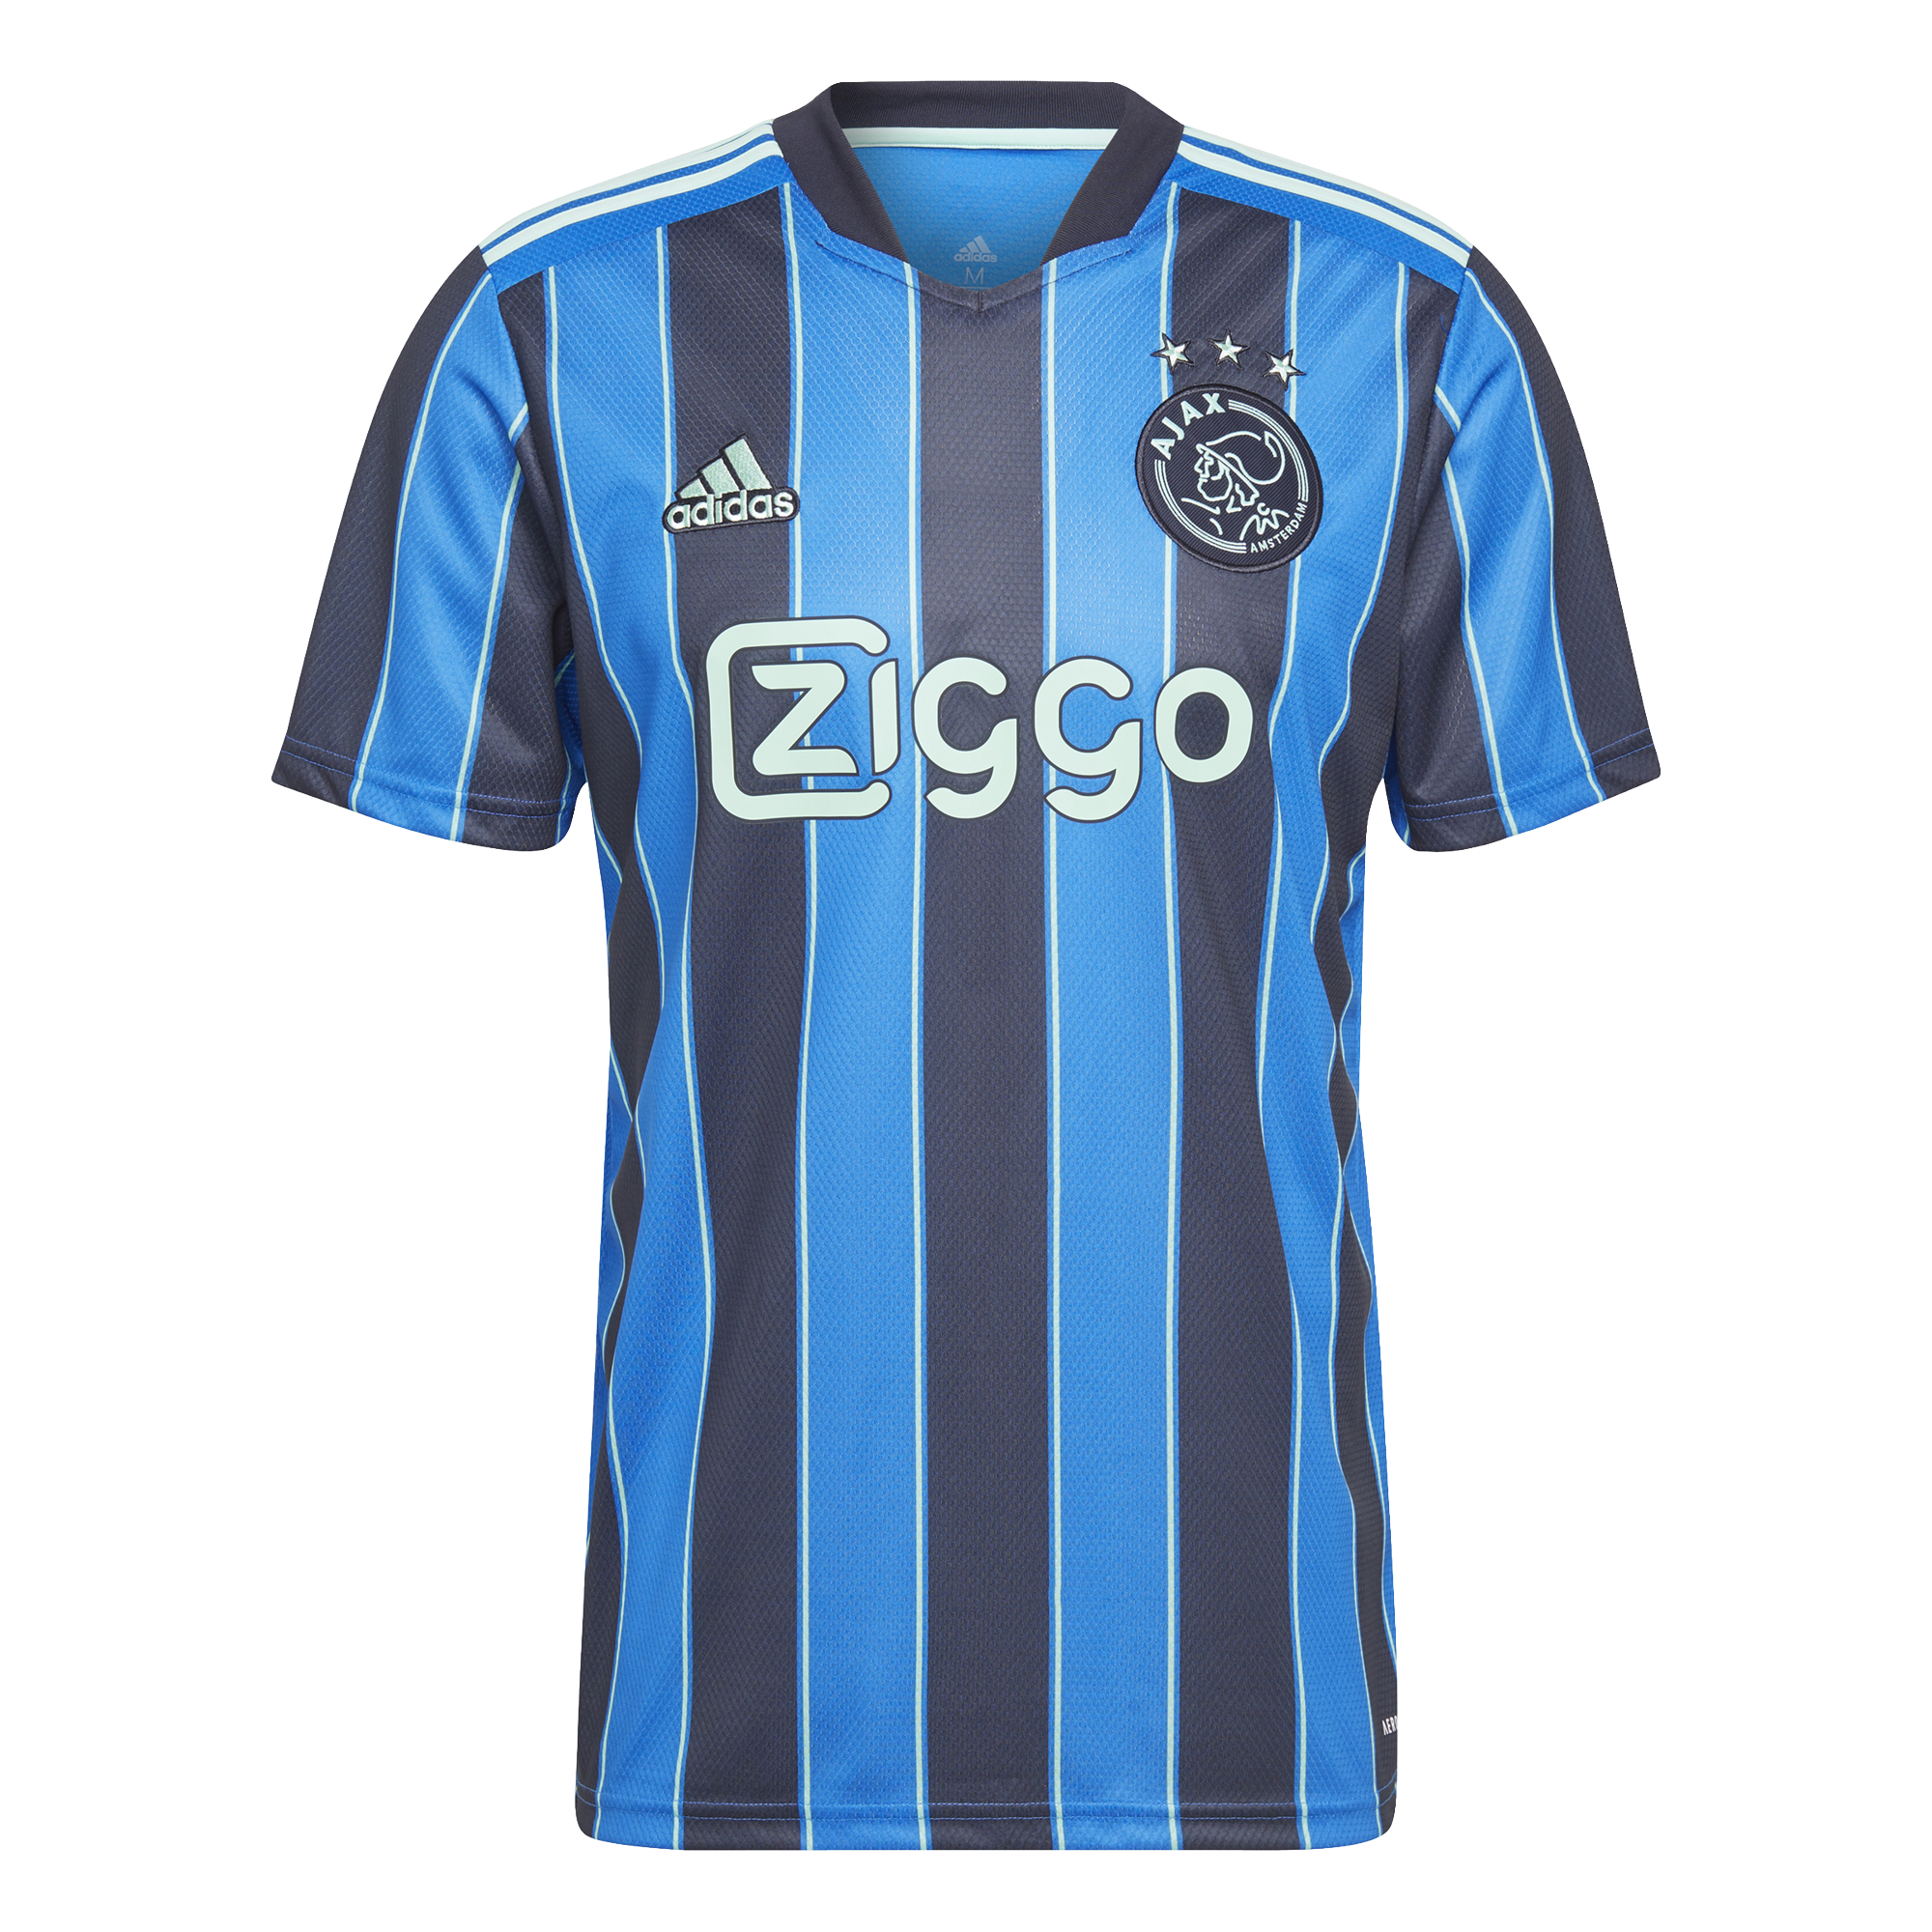 Meenemen Haat Score Adidas Shirt A Ajax - Wim Slangen Sports